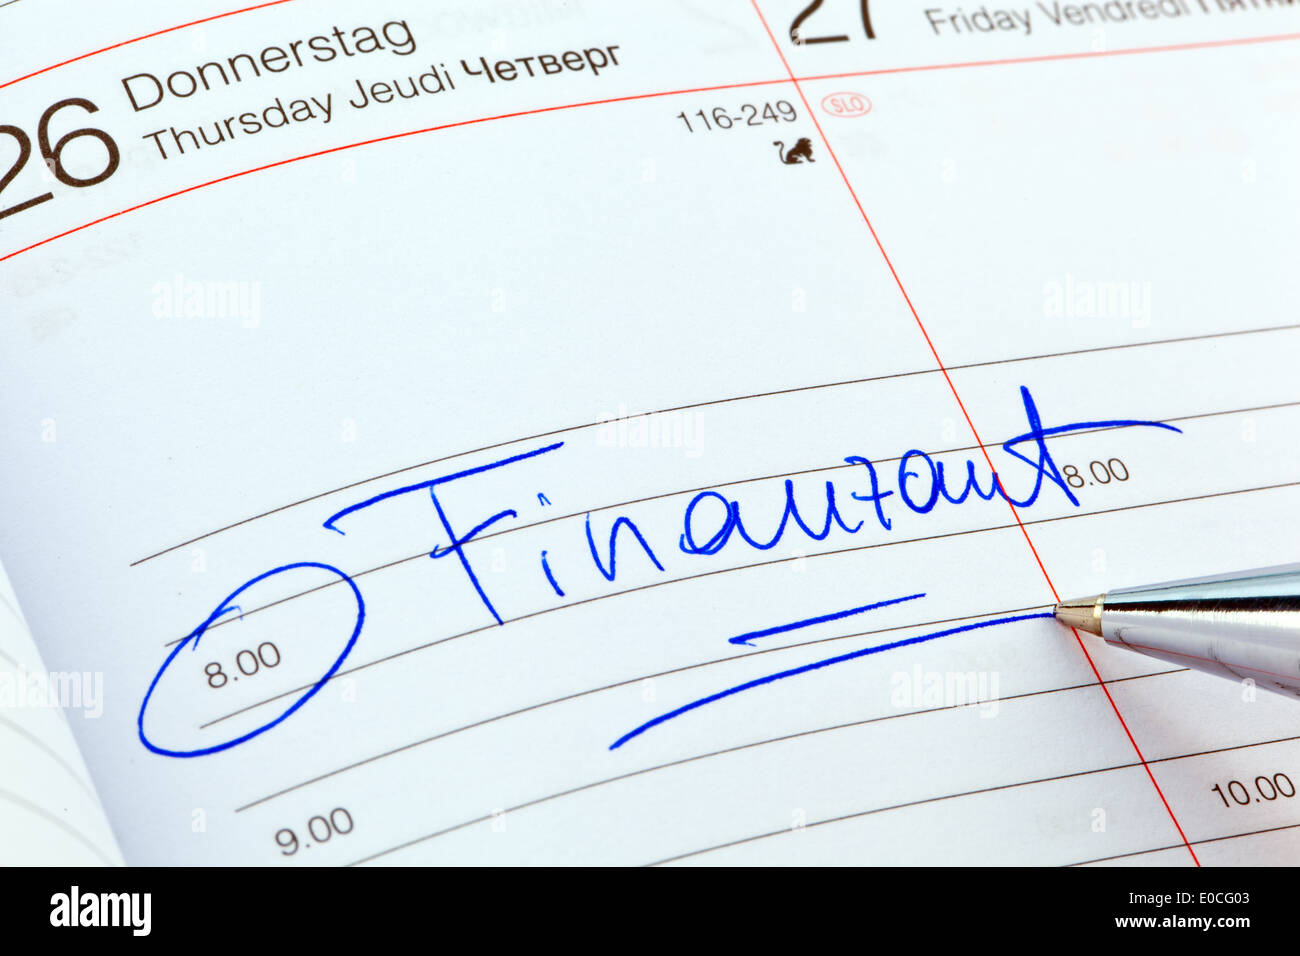 Un appuntamento viene messo giù in un calendario: Ufficio delle imposte, Ein Termin ist in einem Kalender eingetragen: Finanzamt Foto Stock